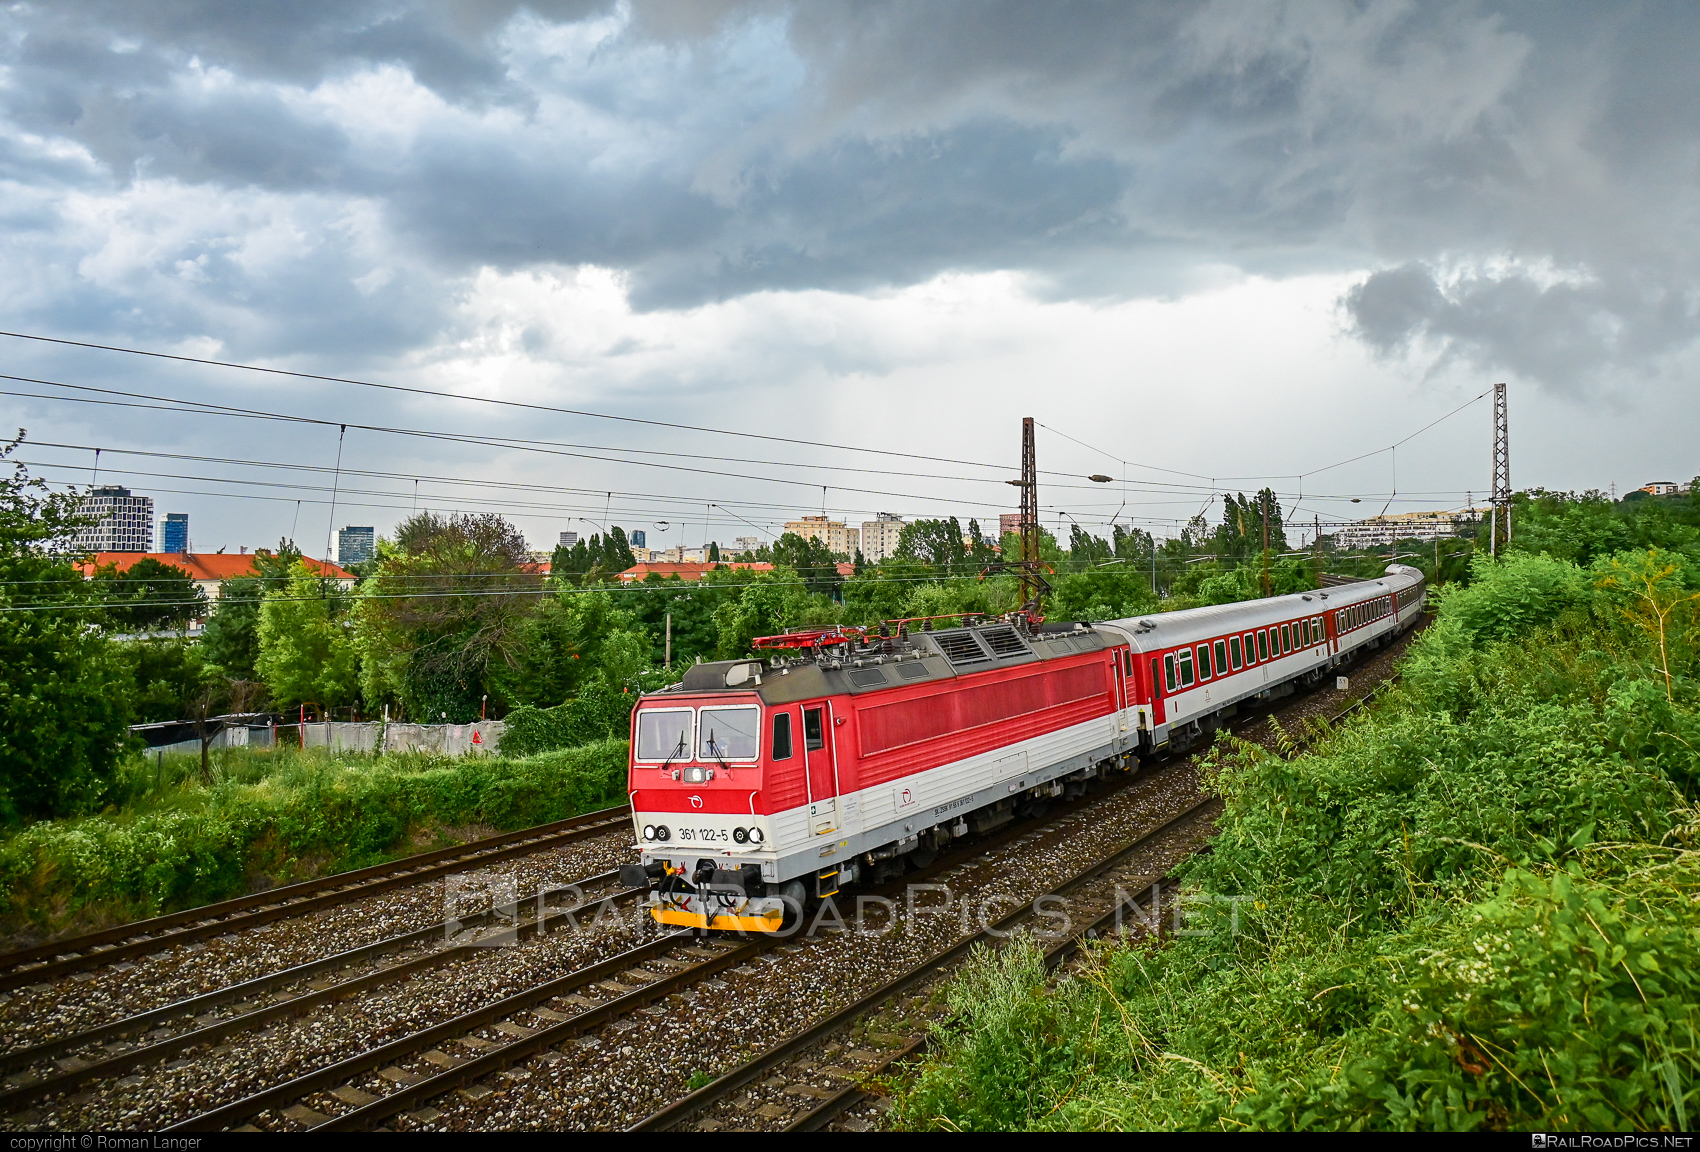 ŽOS Vrútky Class 361.1 - 361 122-5 operated by Železničná Spoločnost' Slovensko, a.s. #ZeleznicnaSpolocnostSlovensko #locomotive361 #locomotive3611 #zosvrutky #zssk